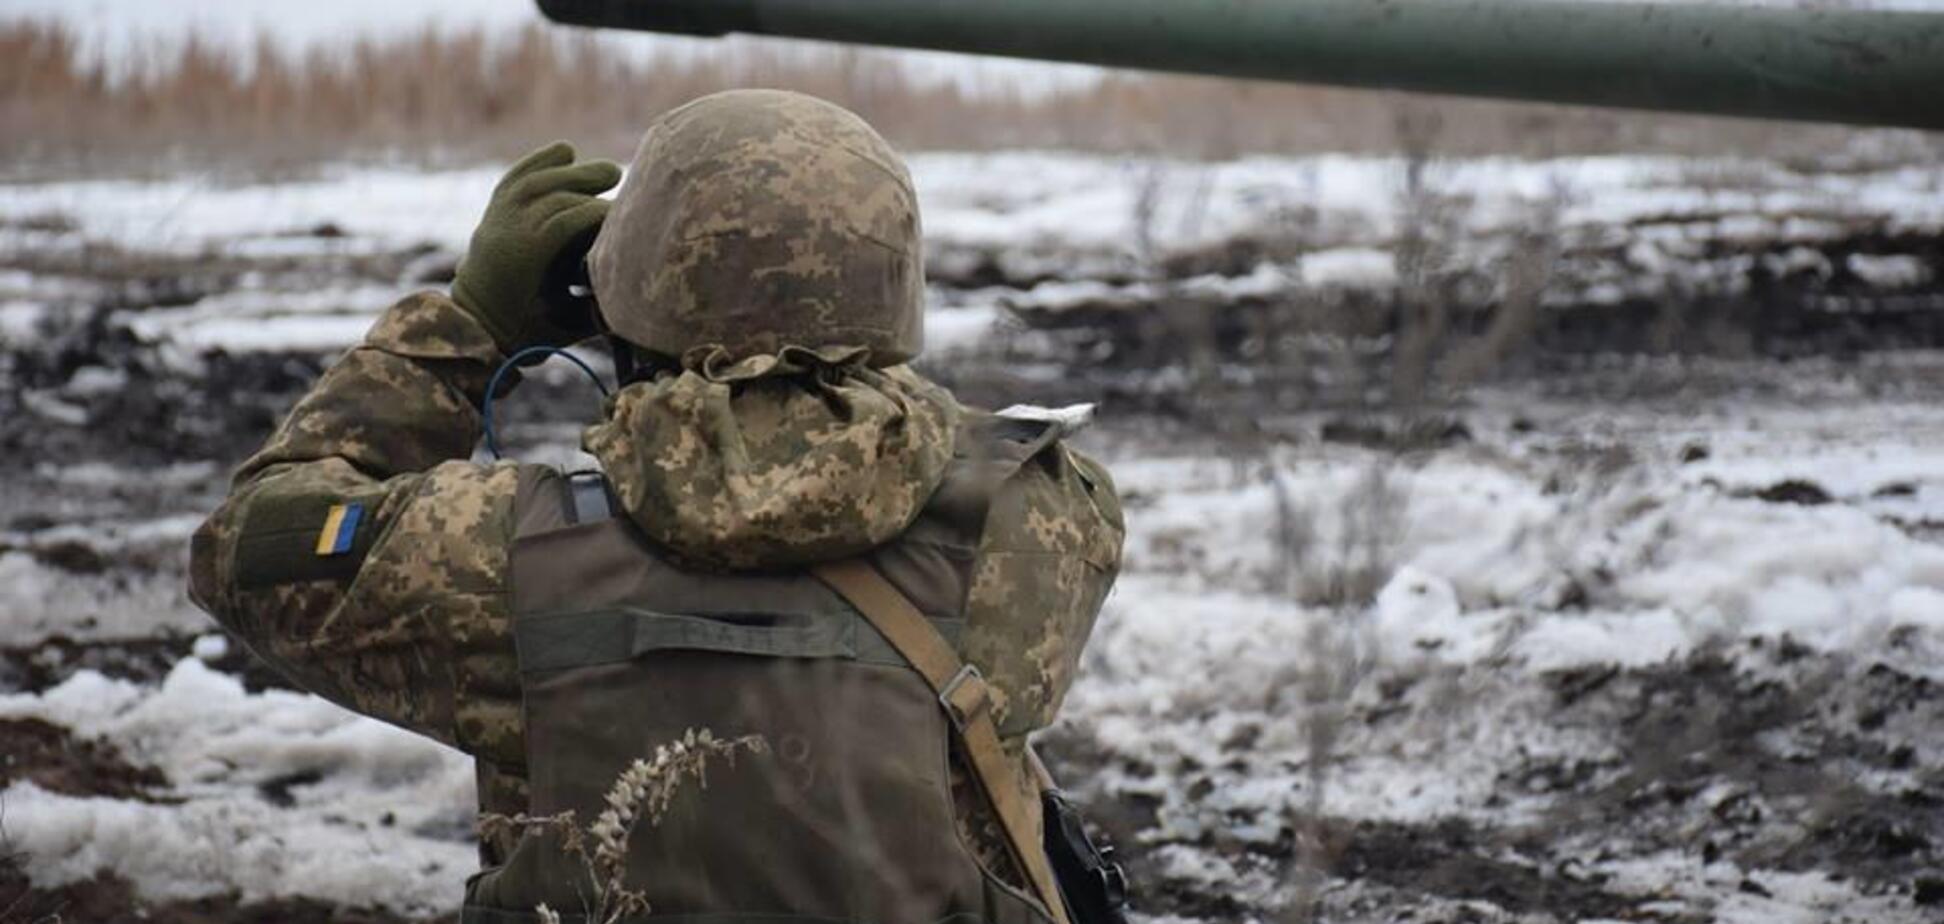 Разведение сил на Донбассе: террористы пошли на новую подлость